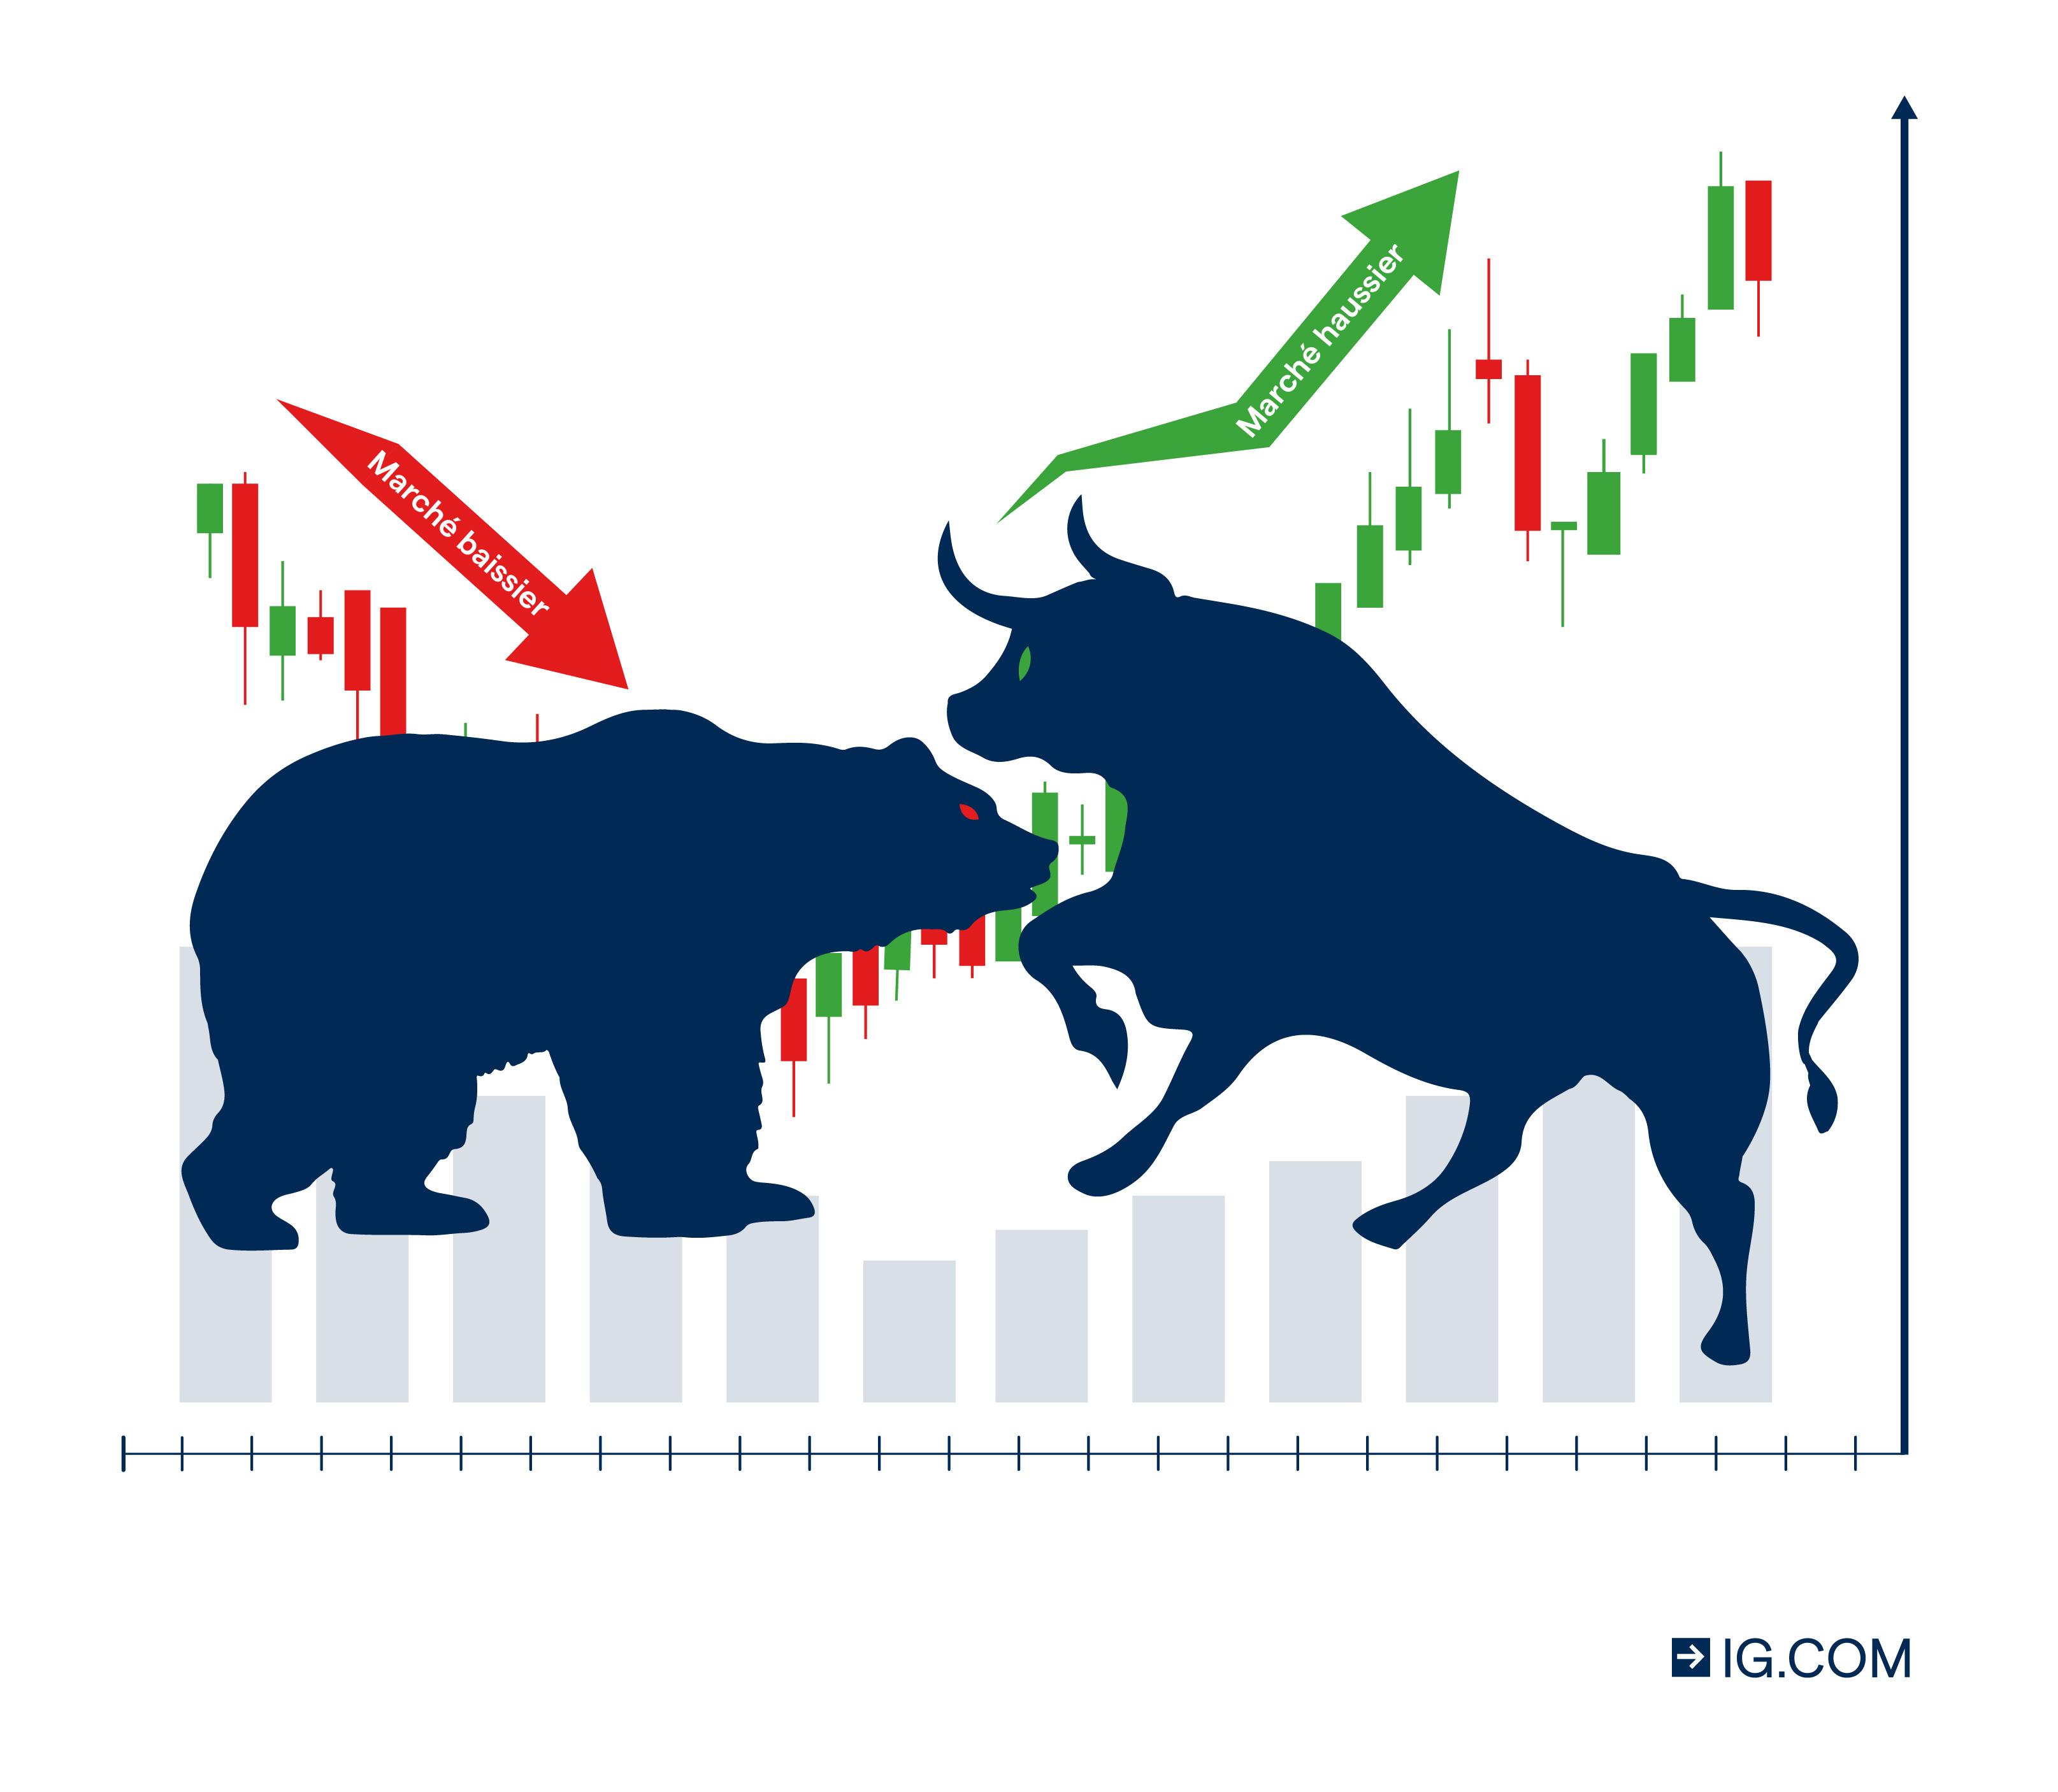 marché baissier et marché haussier -bull et bear market